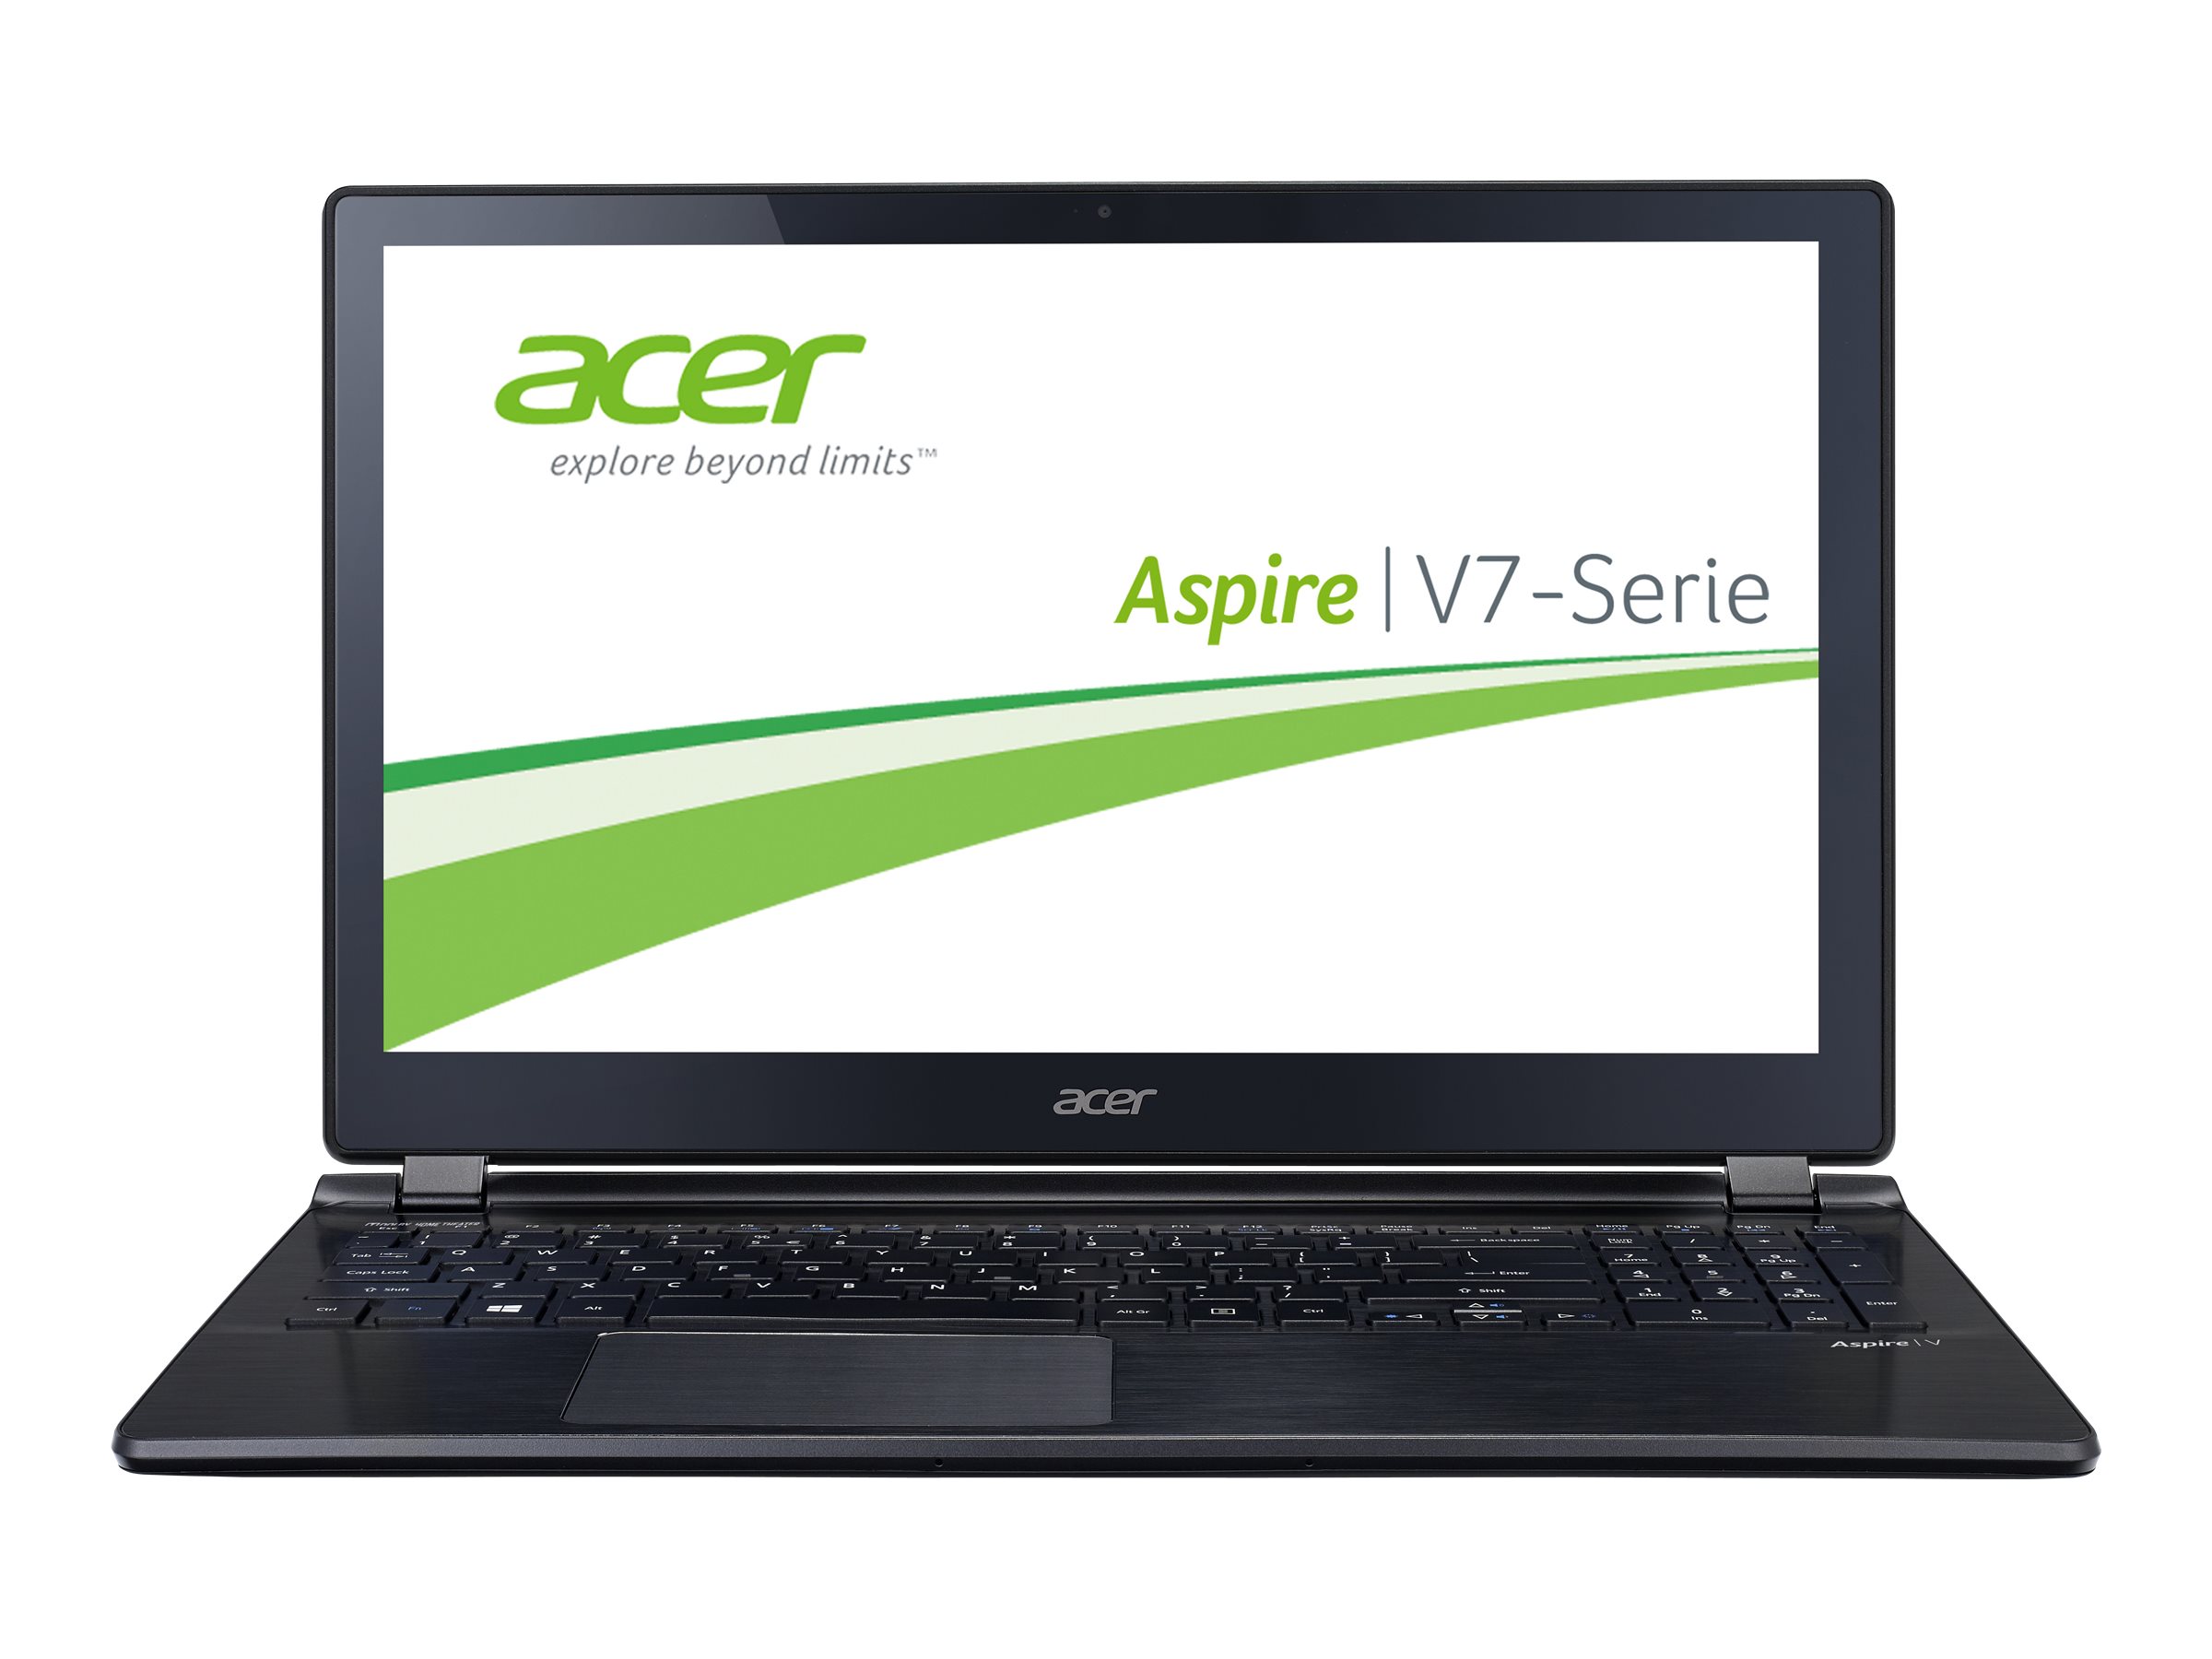 Acer Aspire V7 (582P)